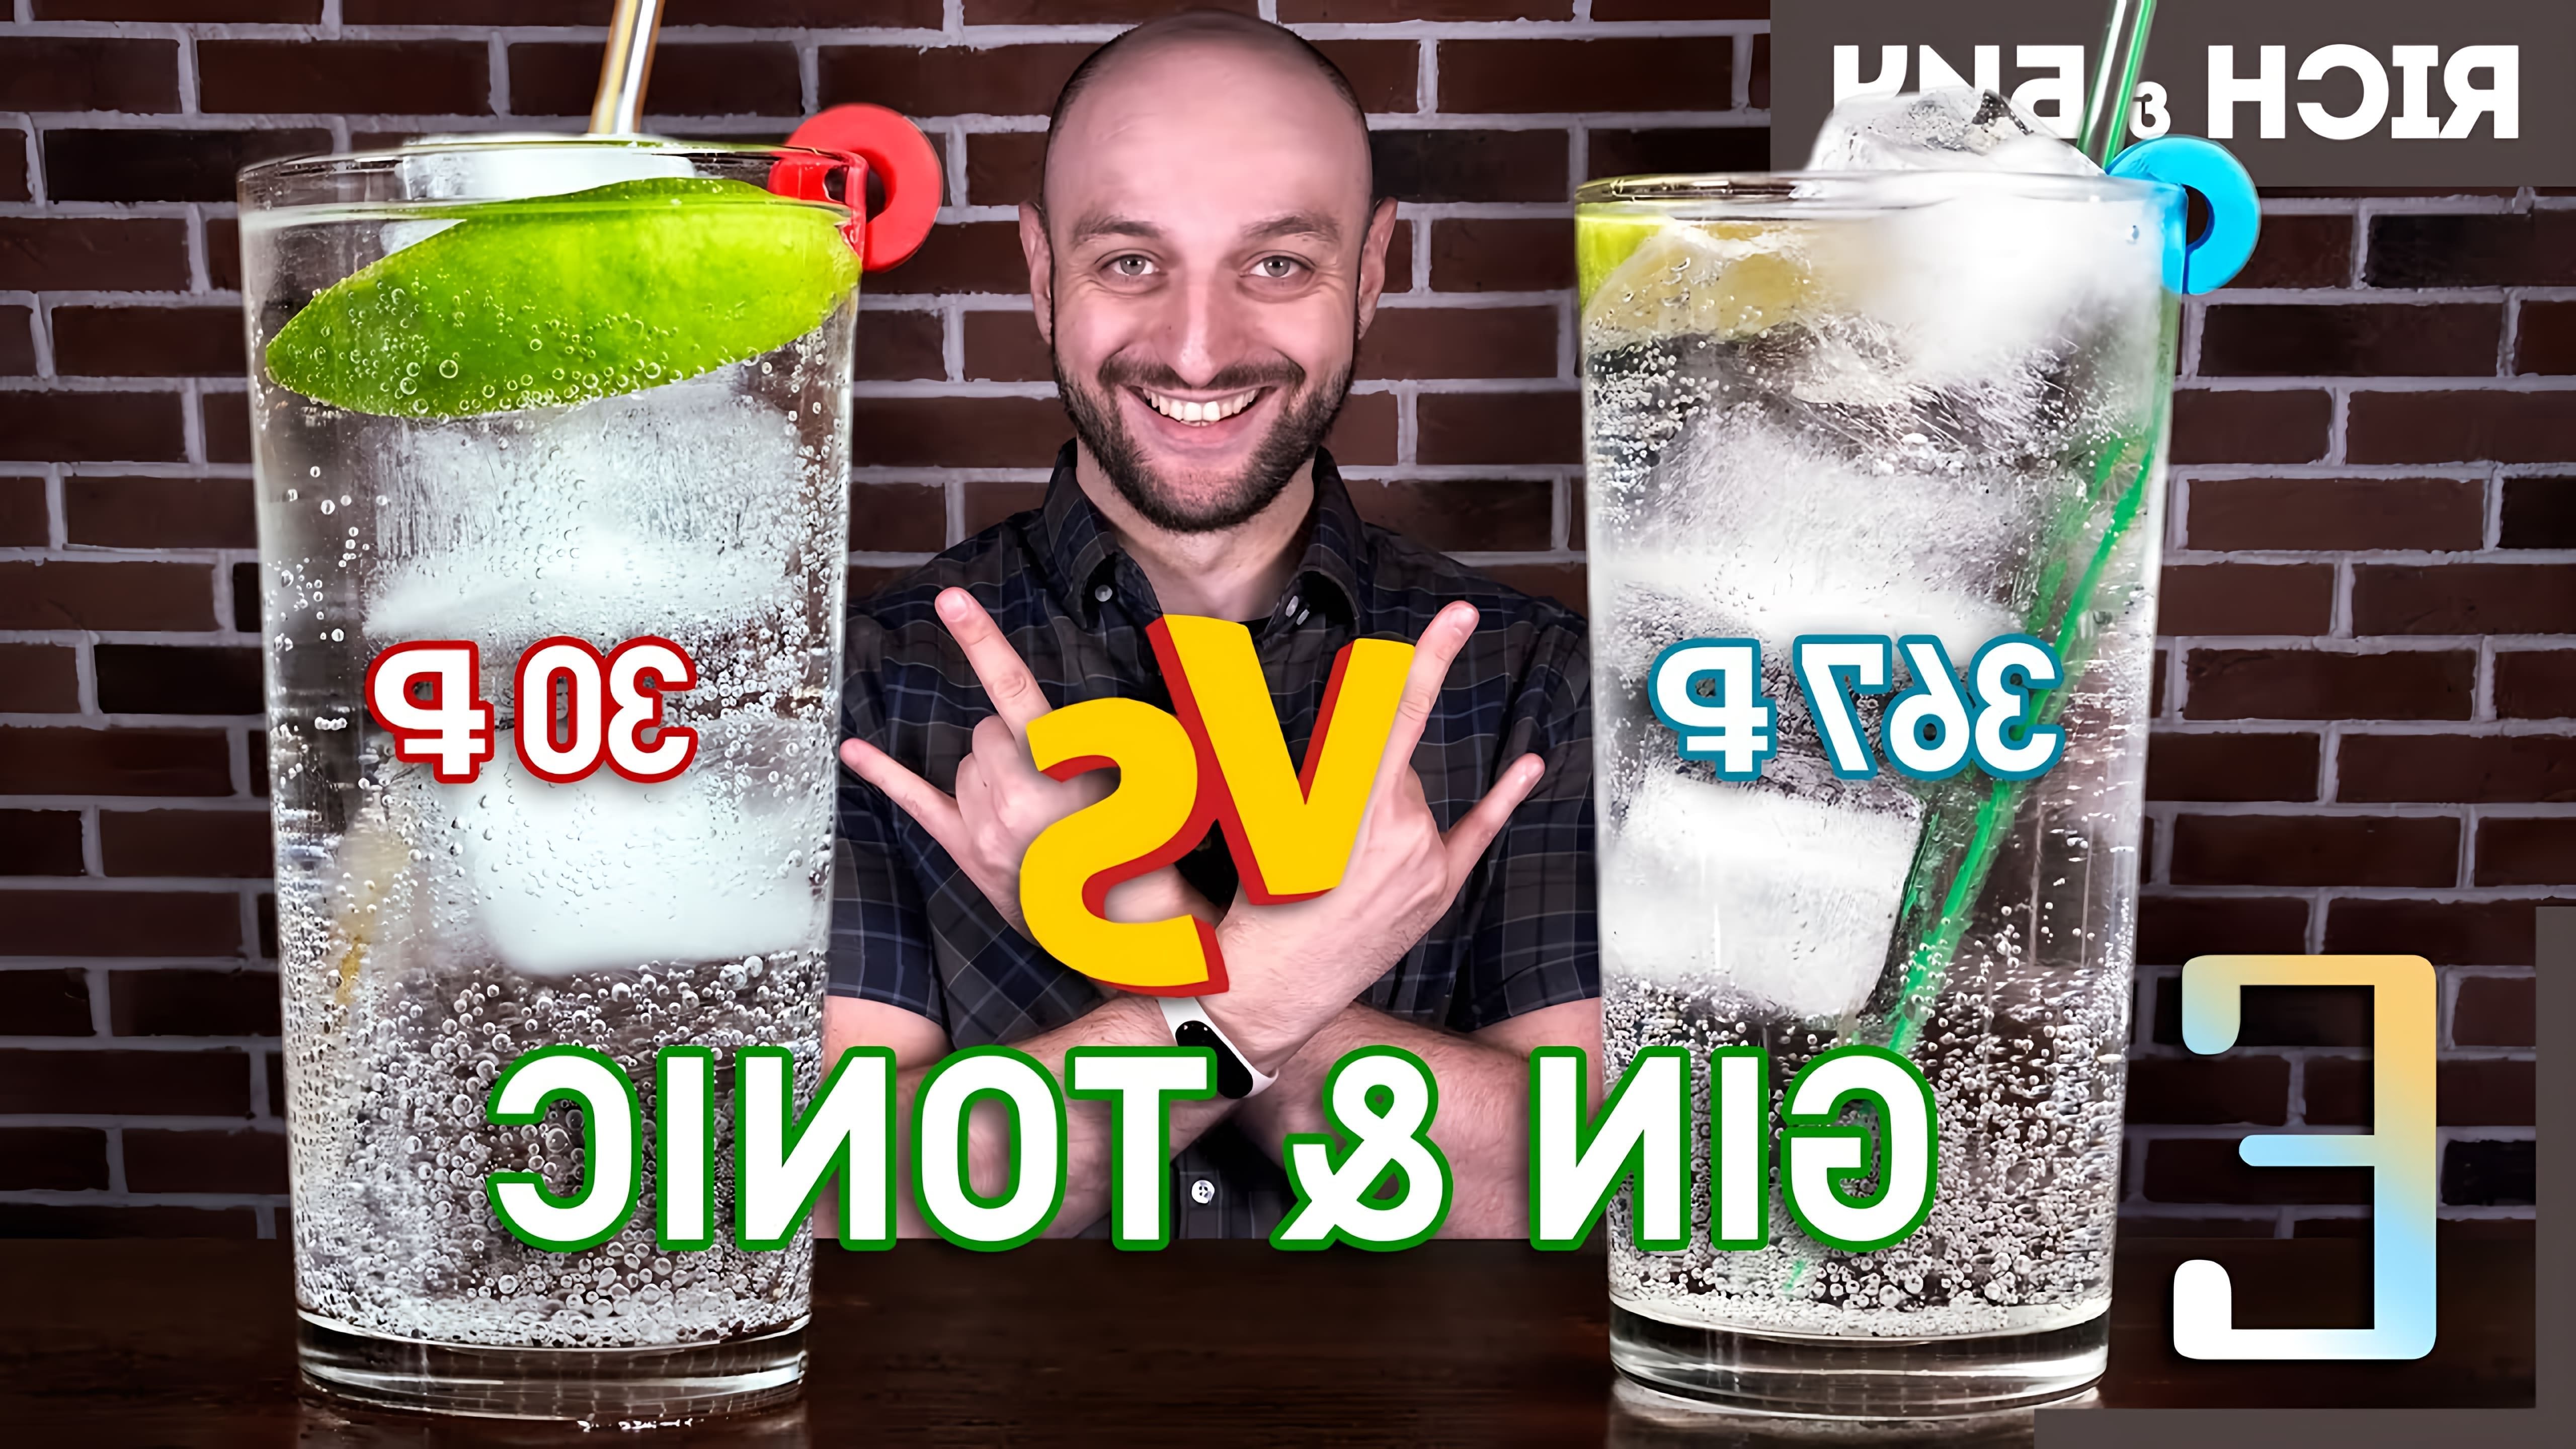 В этом видео "Дорого vs Дёшево — ДЖИН-ТОНИК / Gin & Tonic" автор сравнивает четыре версии джин-тоника, используя разные ингредиенты